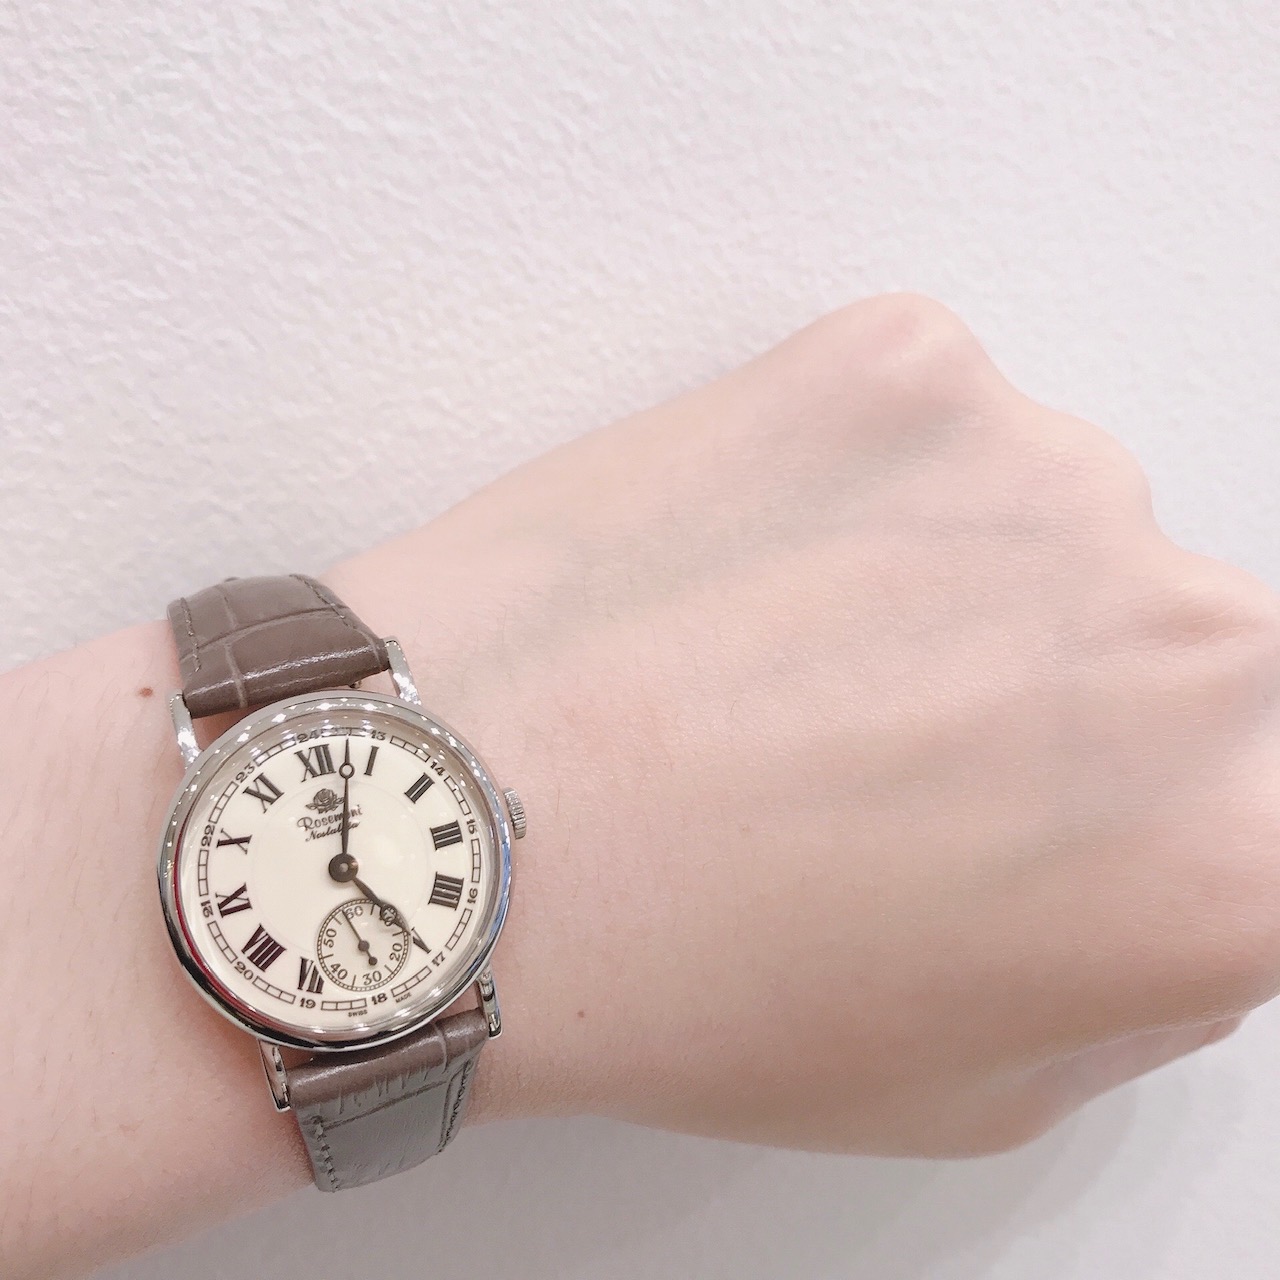 スイス伝統の時計技術とスタイルを受け継ぐ腕時計「ロゼモン」から新作のご紹介 | 宮城県仙台市 結婚指輪・婚約指輪ウェディWEDY ブライダル専門店